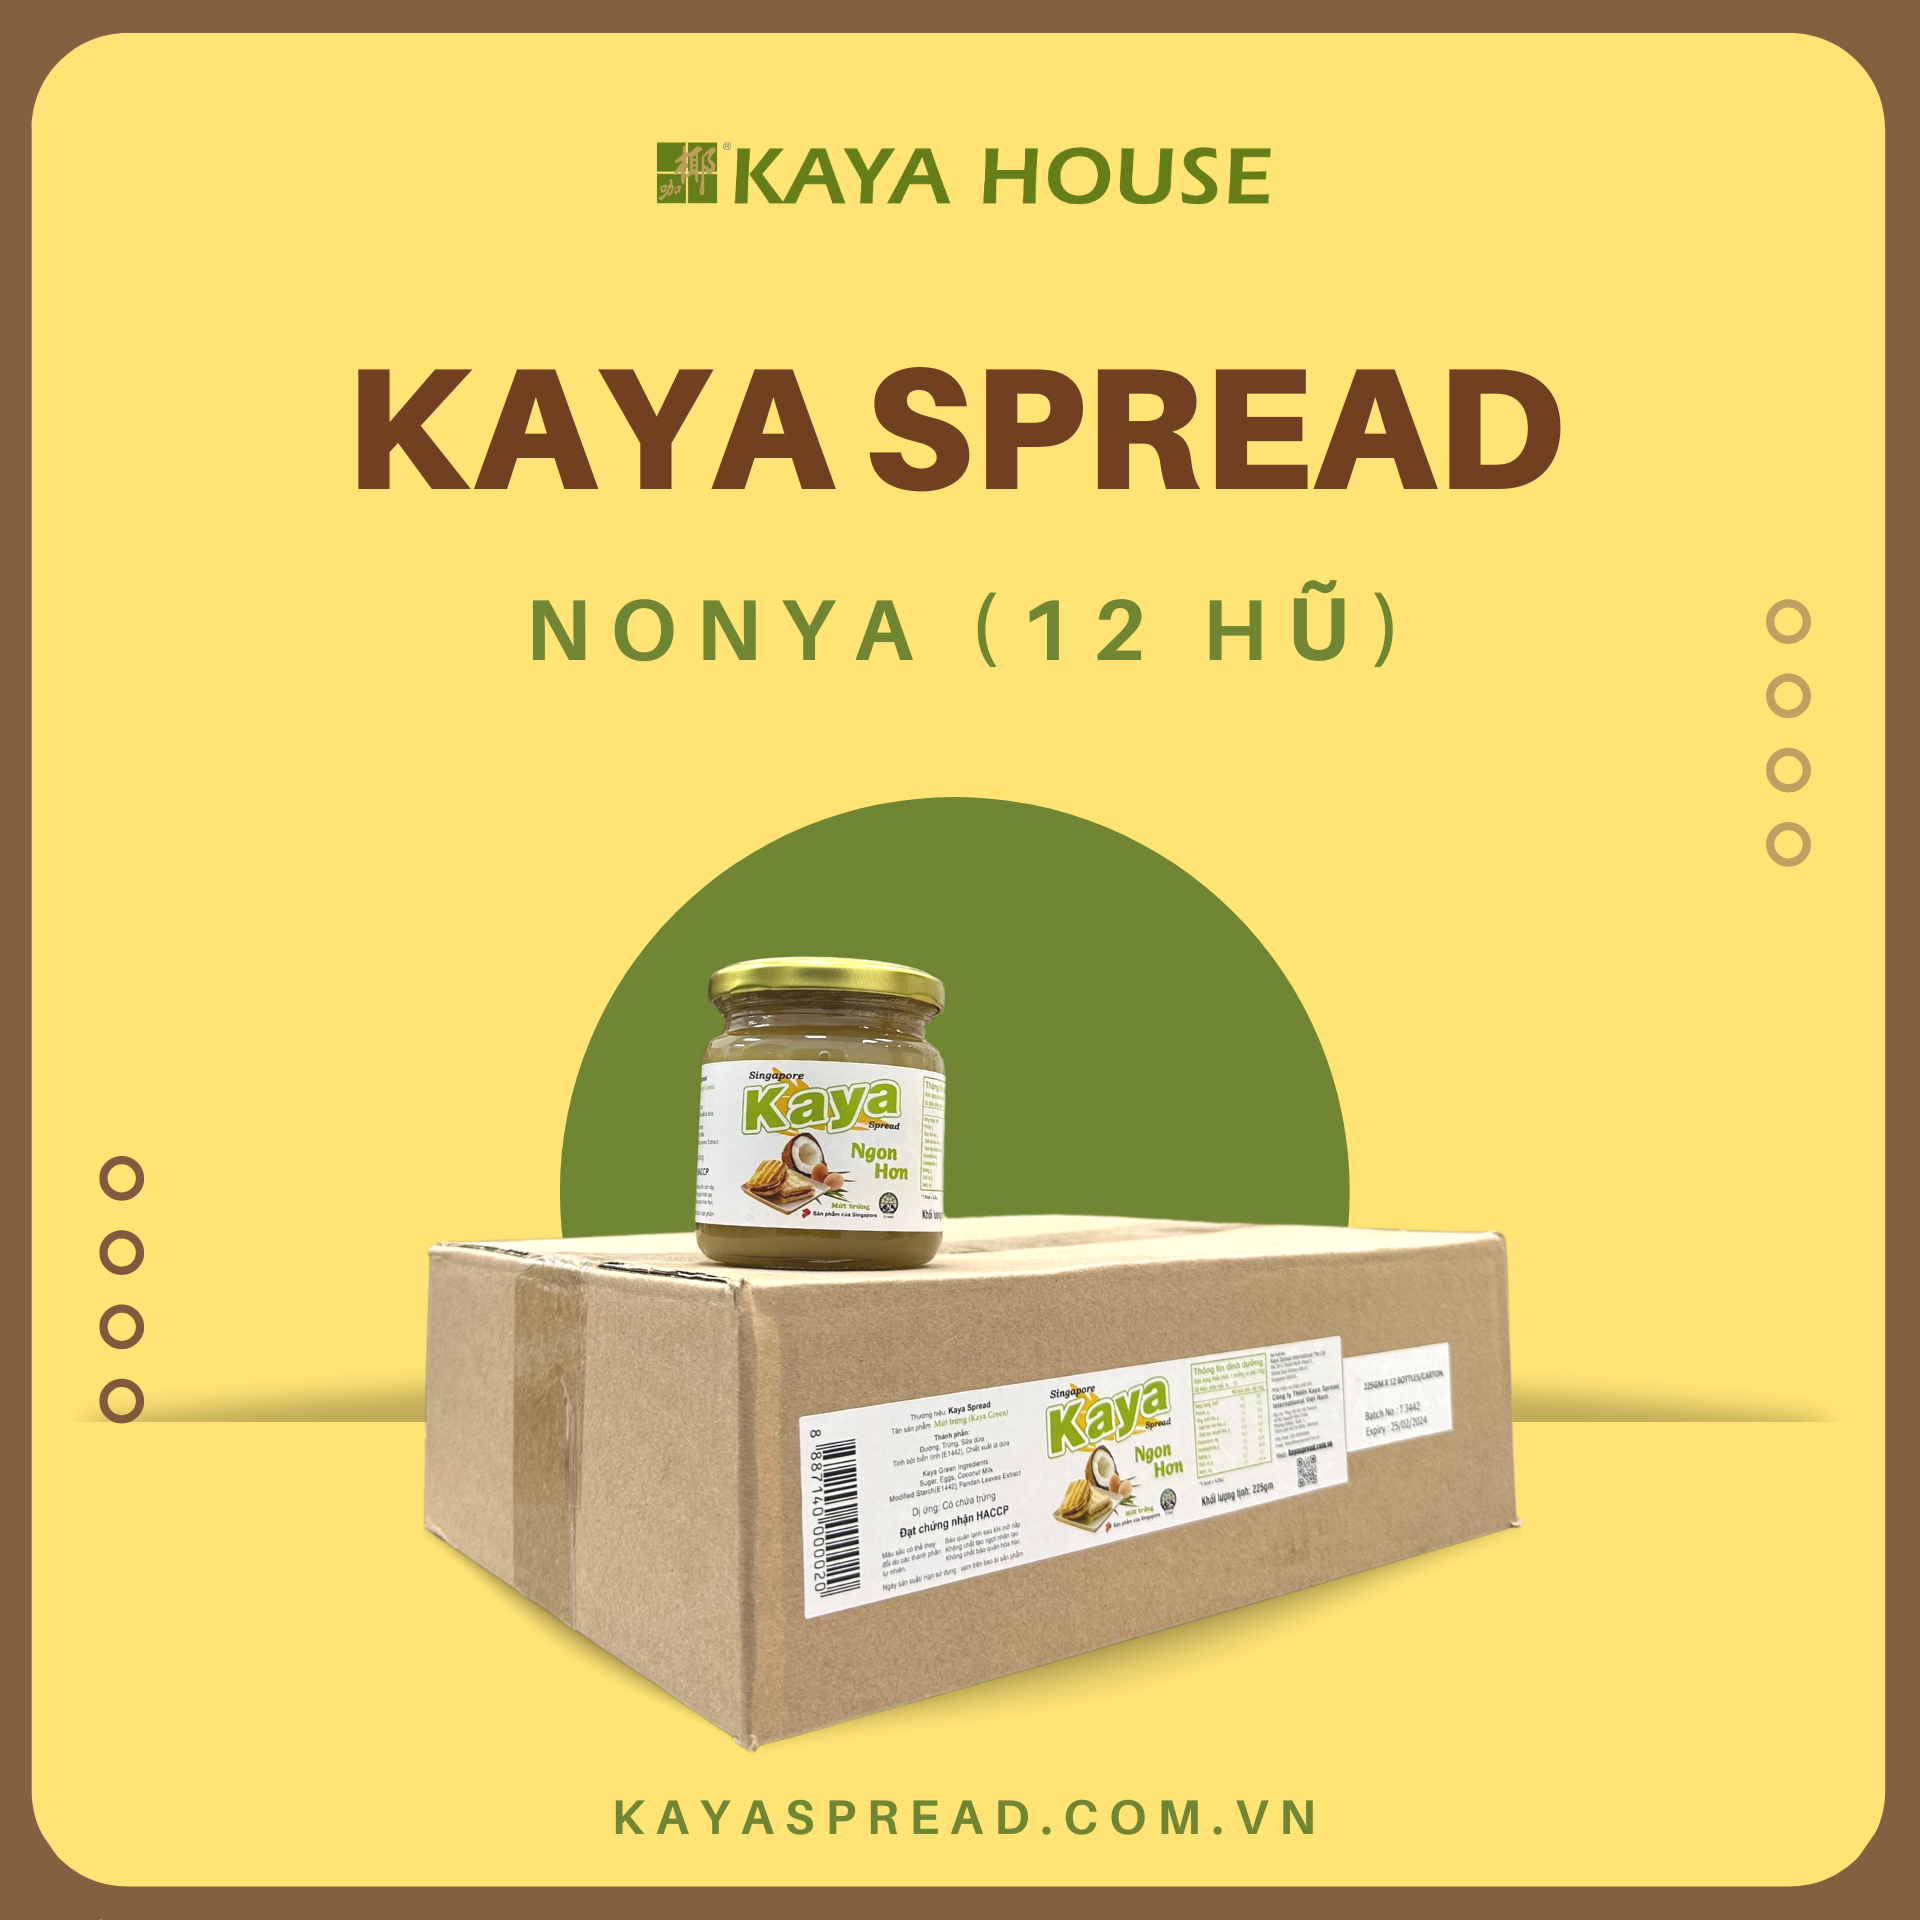 Thùng 12 hũ Mứt Kaya Singapore Nonya 225G - Kaya Spread - Ăn kèm với Sandwich, làm nguyên liệu nấu ăn